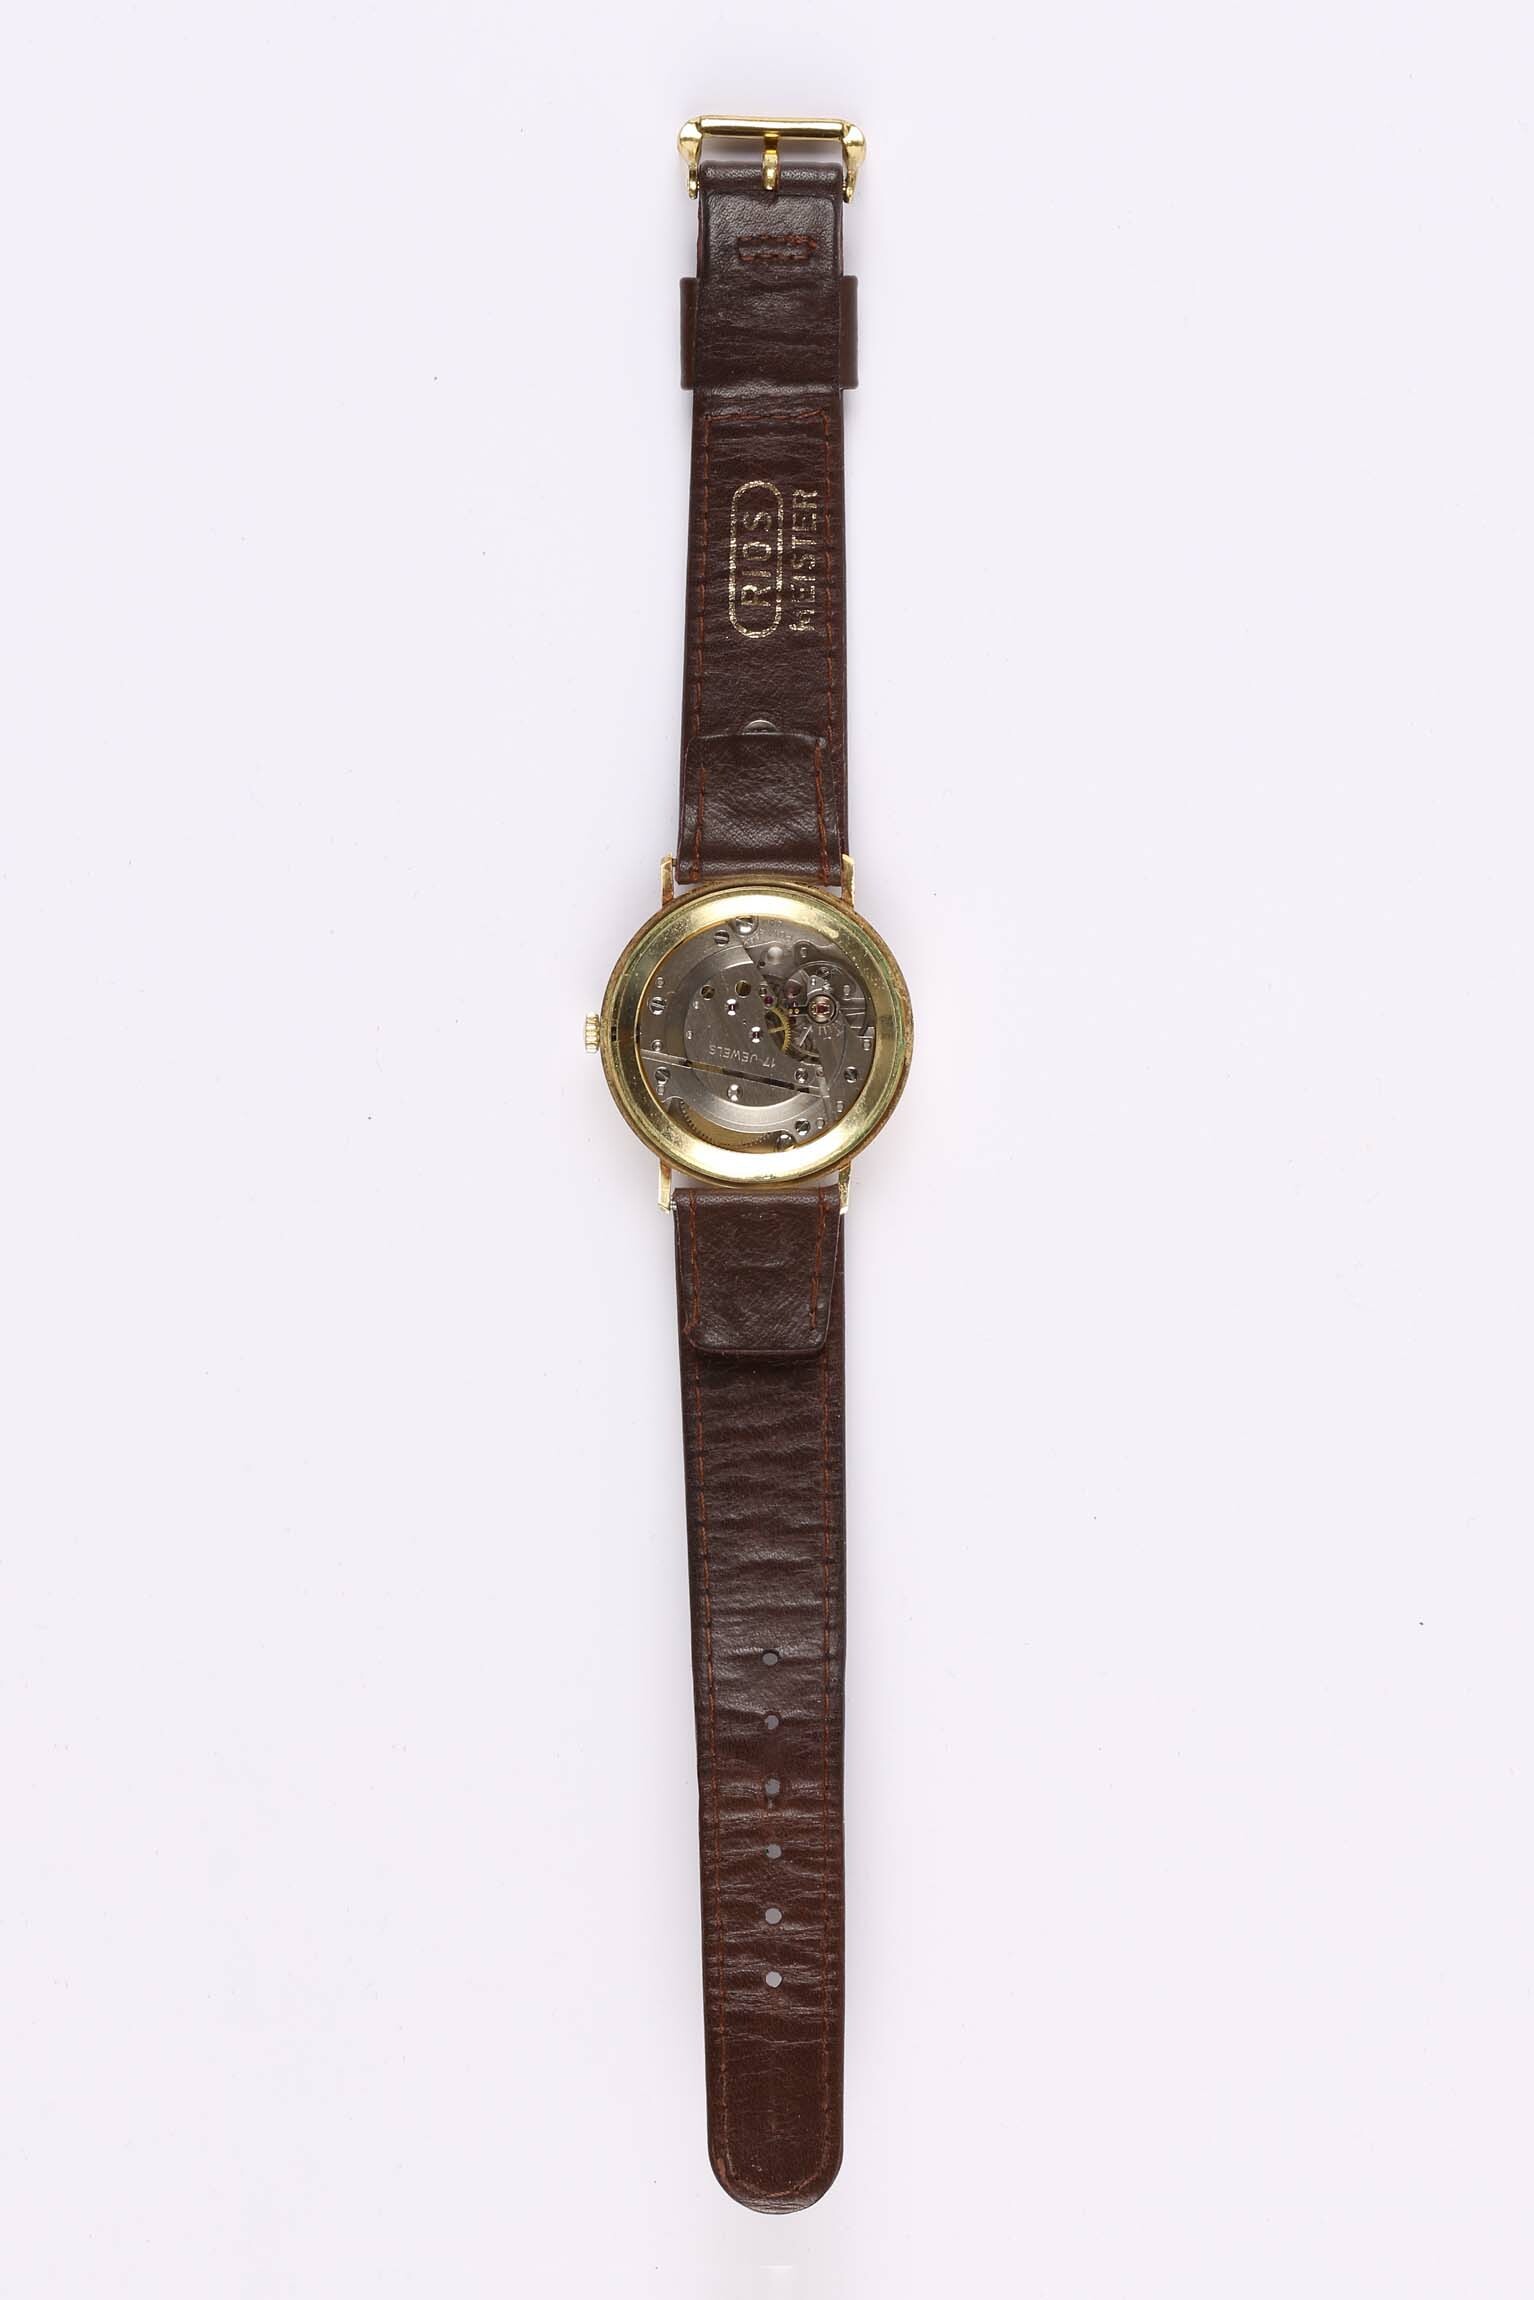 Armbanduhr, Arctos, Pforzheim, um 1970 (Deutsches Uhrenmuseum CC BY-SA)